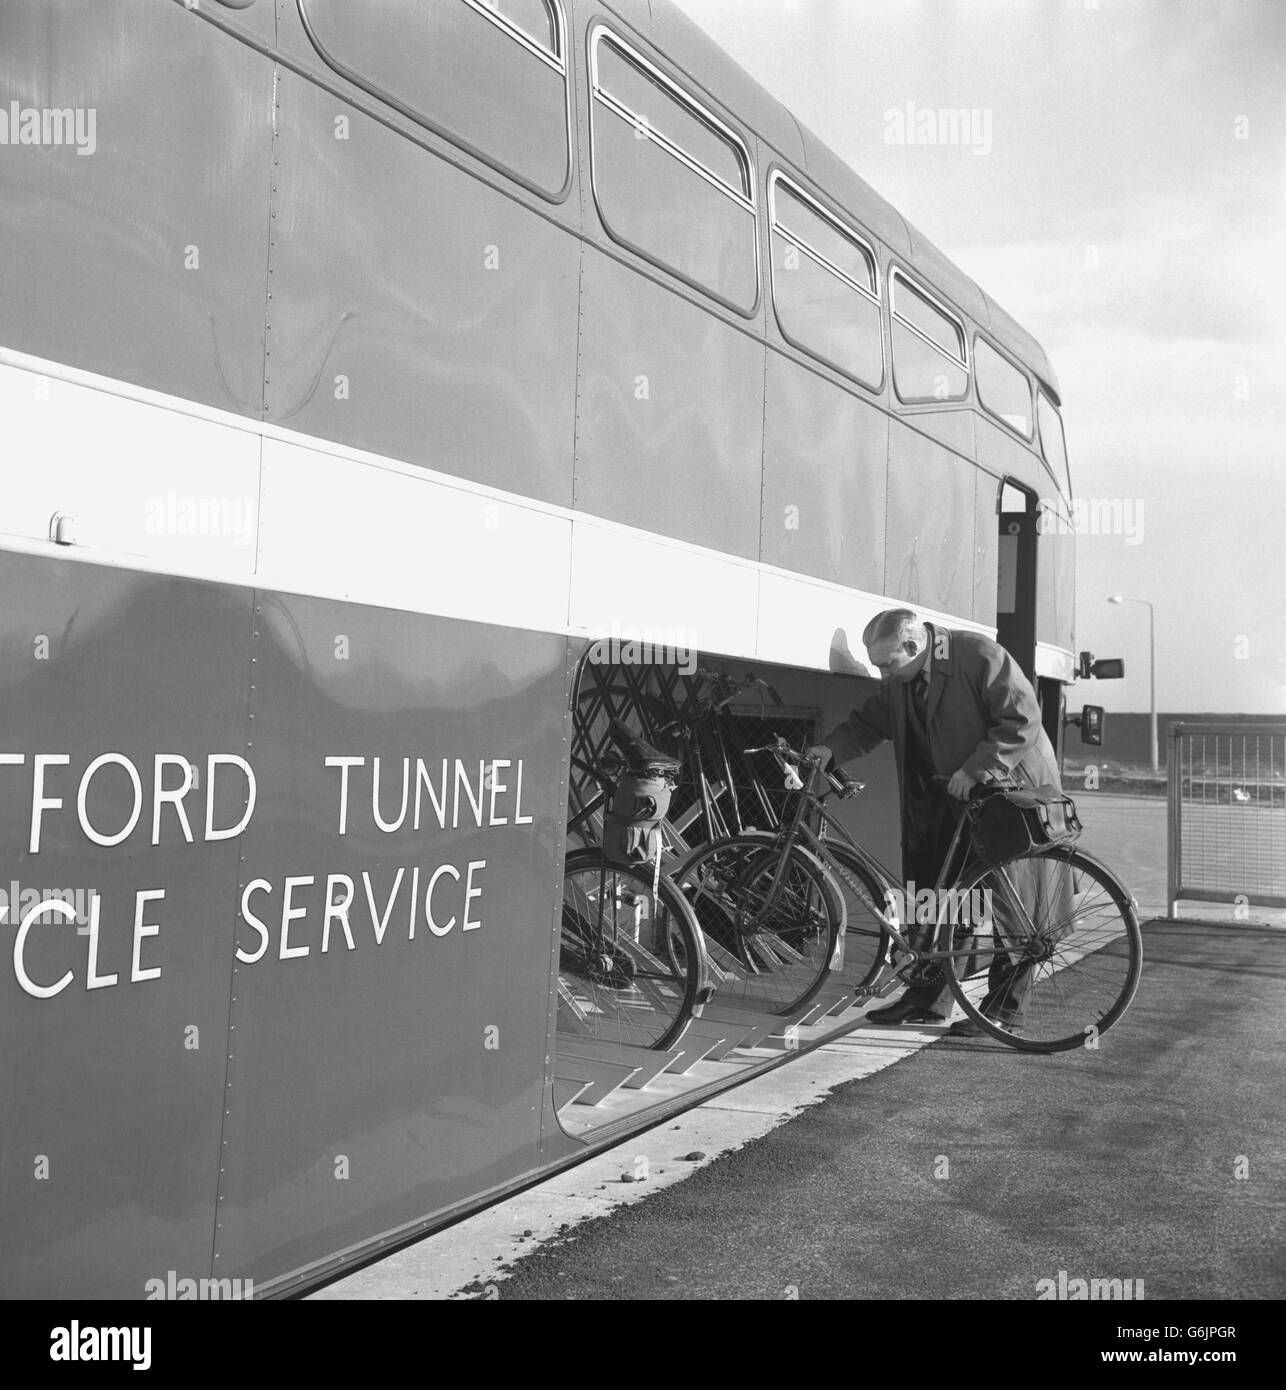 Ein Bus für Pedalradler, der durch den Dartford-Tunnel fährt, führt zurück in eine spezielle Ladefläche, von der aus die Fahrräder auf die dafür vorgesehenen Gestelle geschoben werden können. Pedalradler werden aus dem neuen Dartford-Tunnel ausgeschlossen und müssen einen speziellen Bus nutzen, der im neuen Thames-Tunnel zwischen Dartford, Kent, und Thurrock, Essex, eingesetzt wird. Die Fahrt kostet 6d. Stockfoto